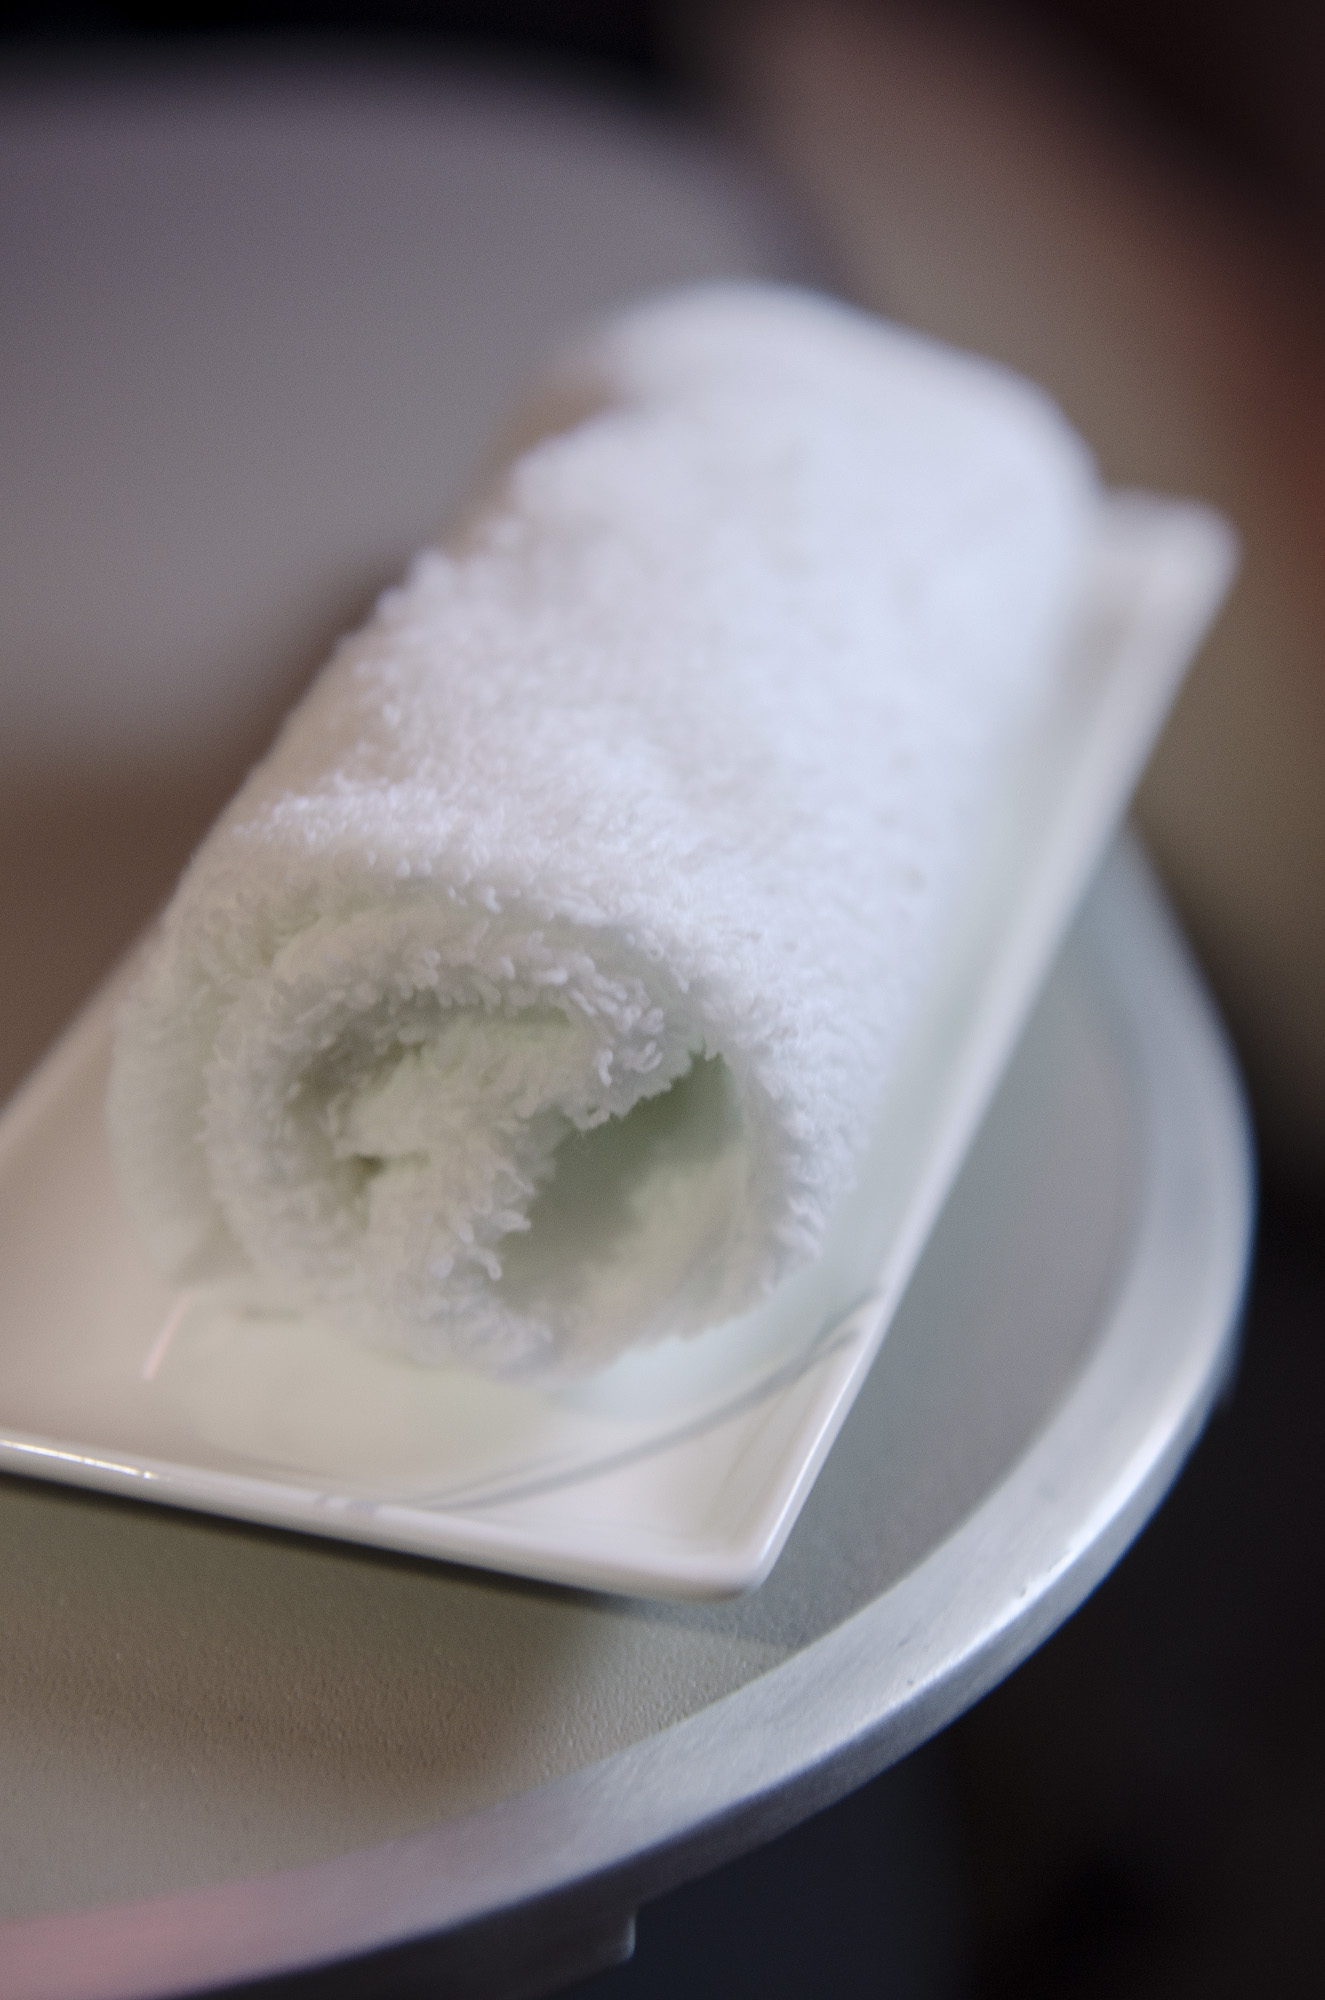 Erfrischung vor dem Flug: Die kleinen Handtücher sorgen für Erfrischung in der Hainan Business Class